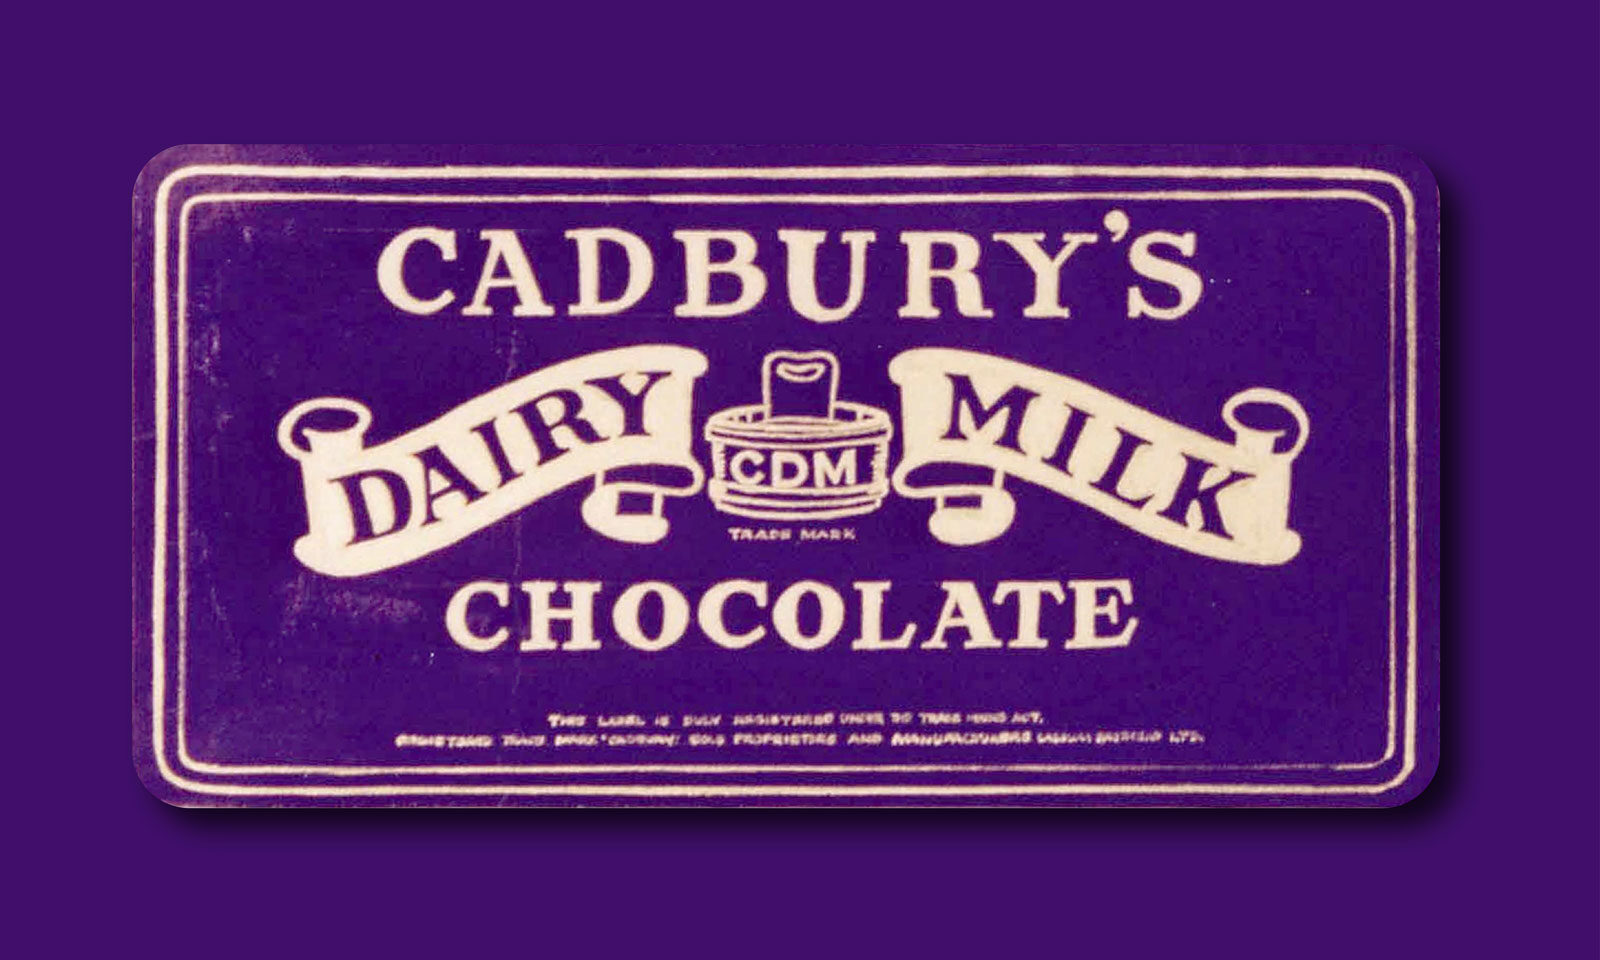 Cadbury archive image